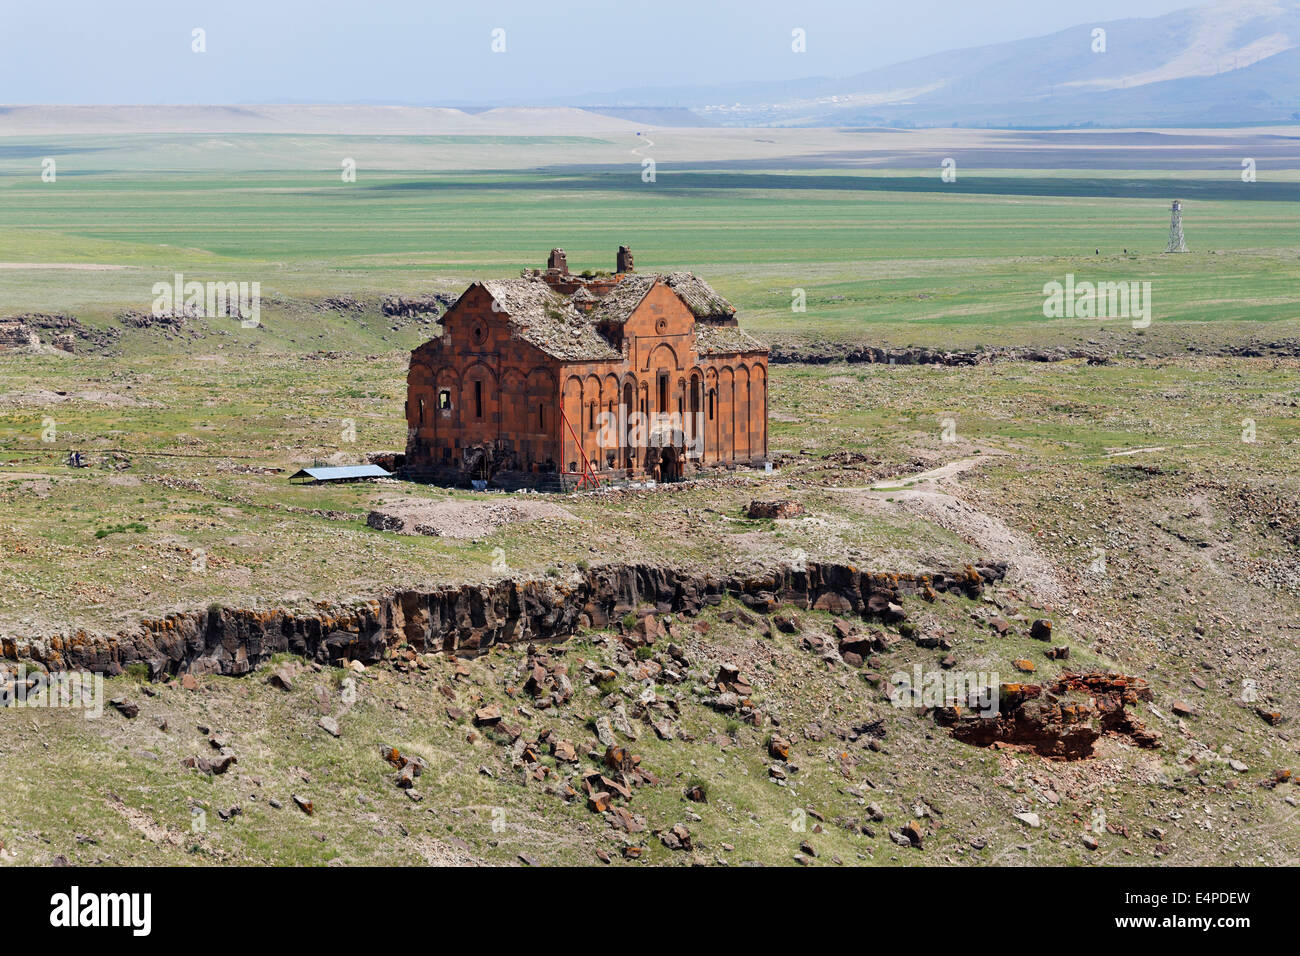 Catedral de Ani, antigua capital de Armenia de Ani, Kars, La Ruta de la Seda, la región de Anatolia oriental, en Anatolia, Turquía Foto de stock